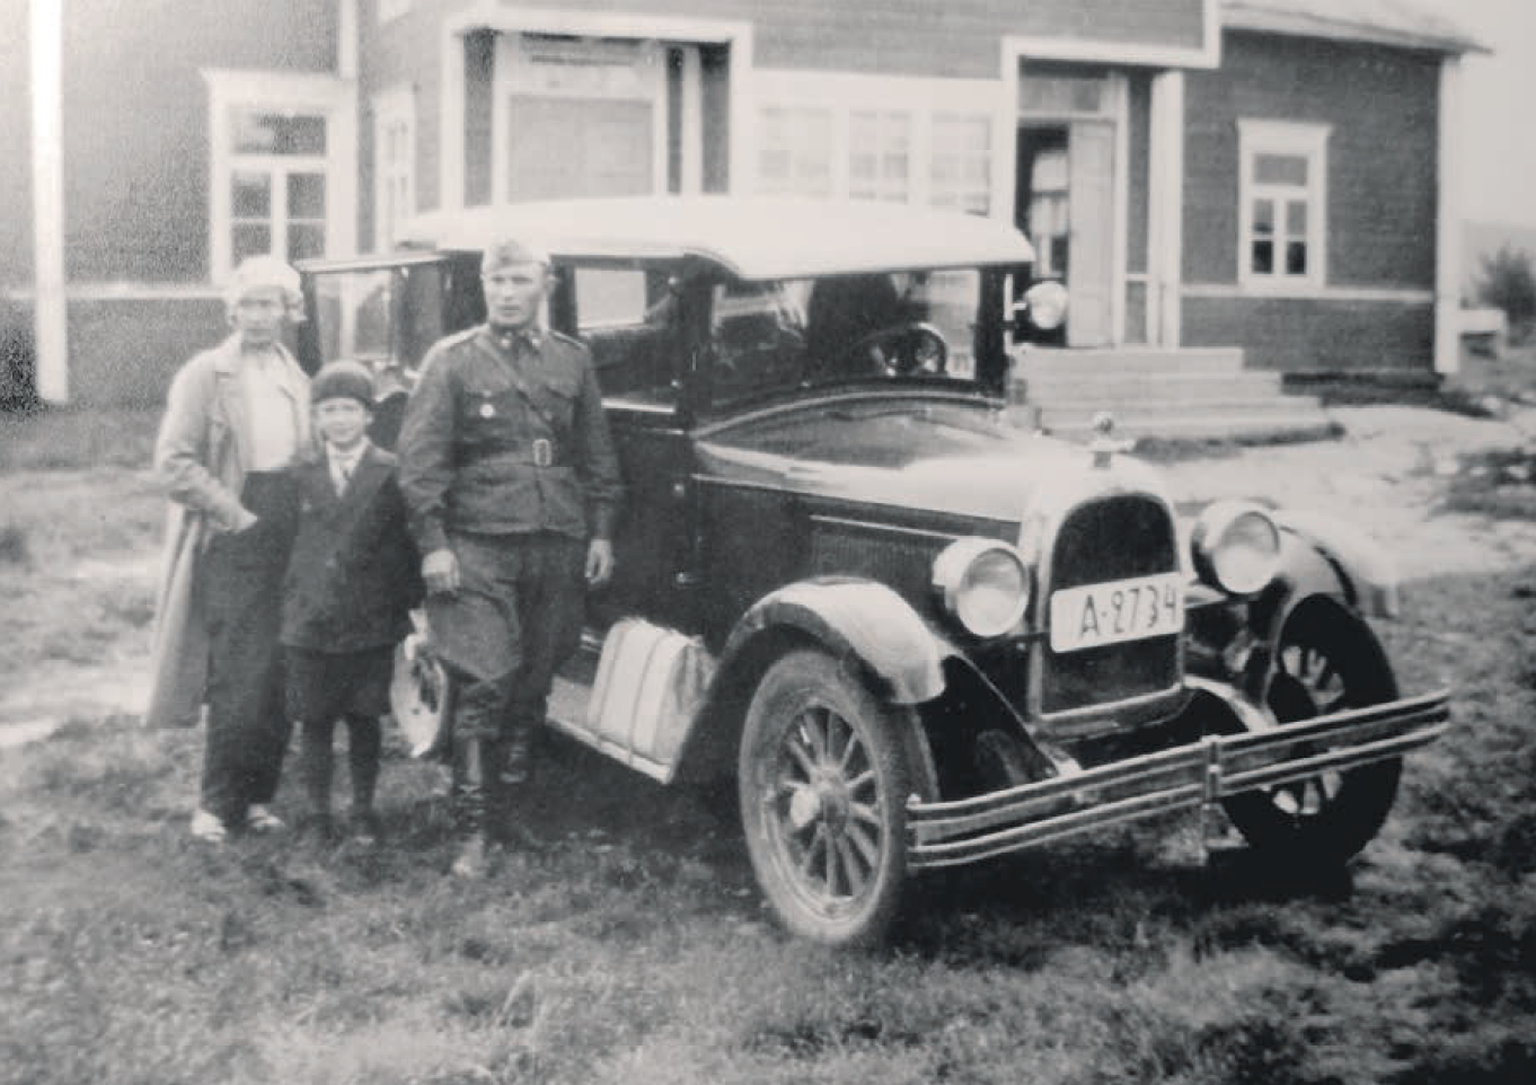 Vilho ja Tyyne Pentikäinen ning nende poeg Pauli tegid suvel 1933 autoga
puhkusereisi Põhja-Soome.